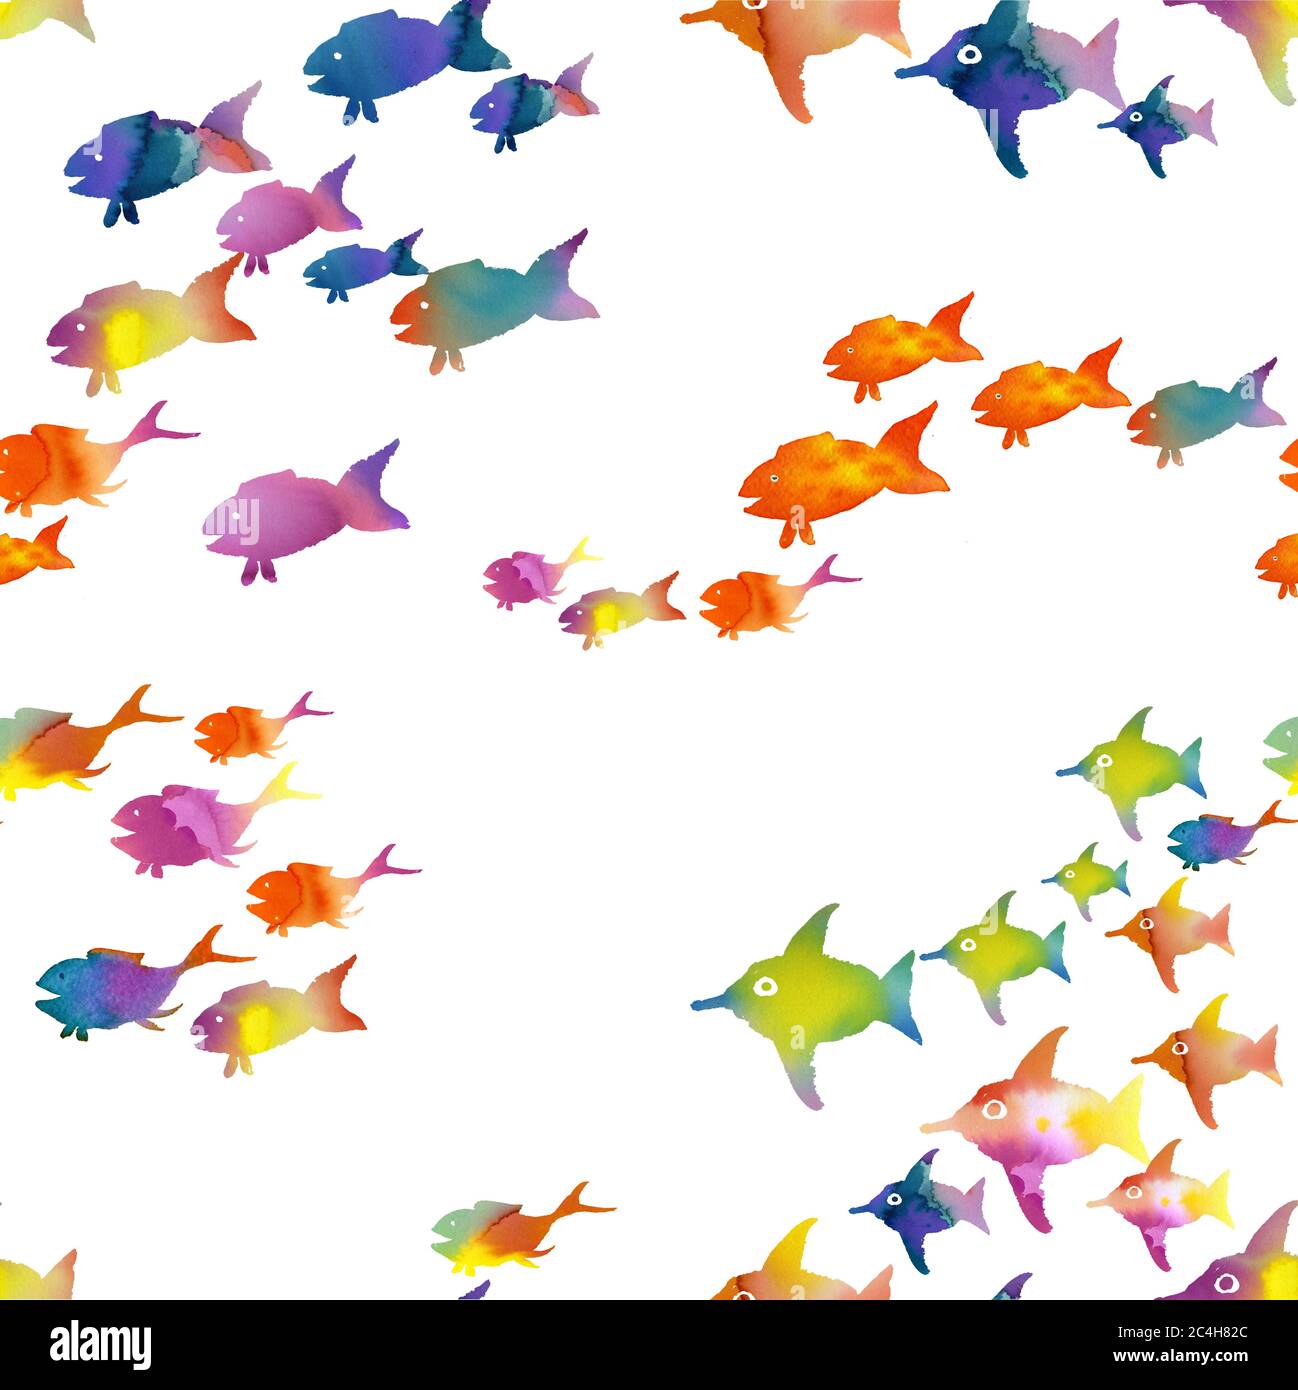 dibujo de acuarela con peces acuarela de colores hechos a mano Foto de stock